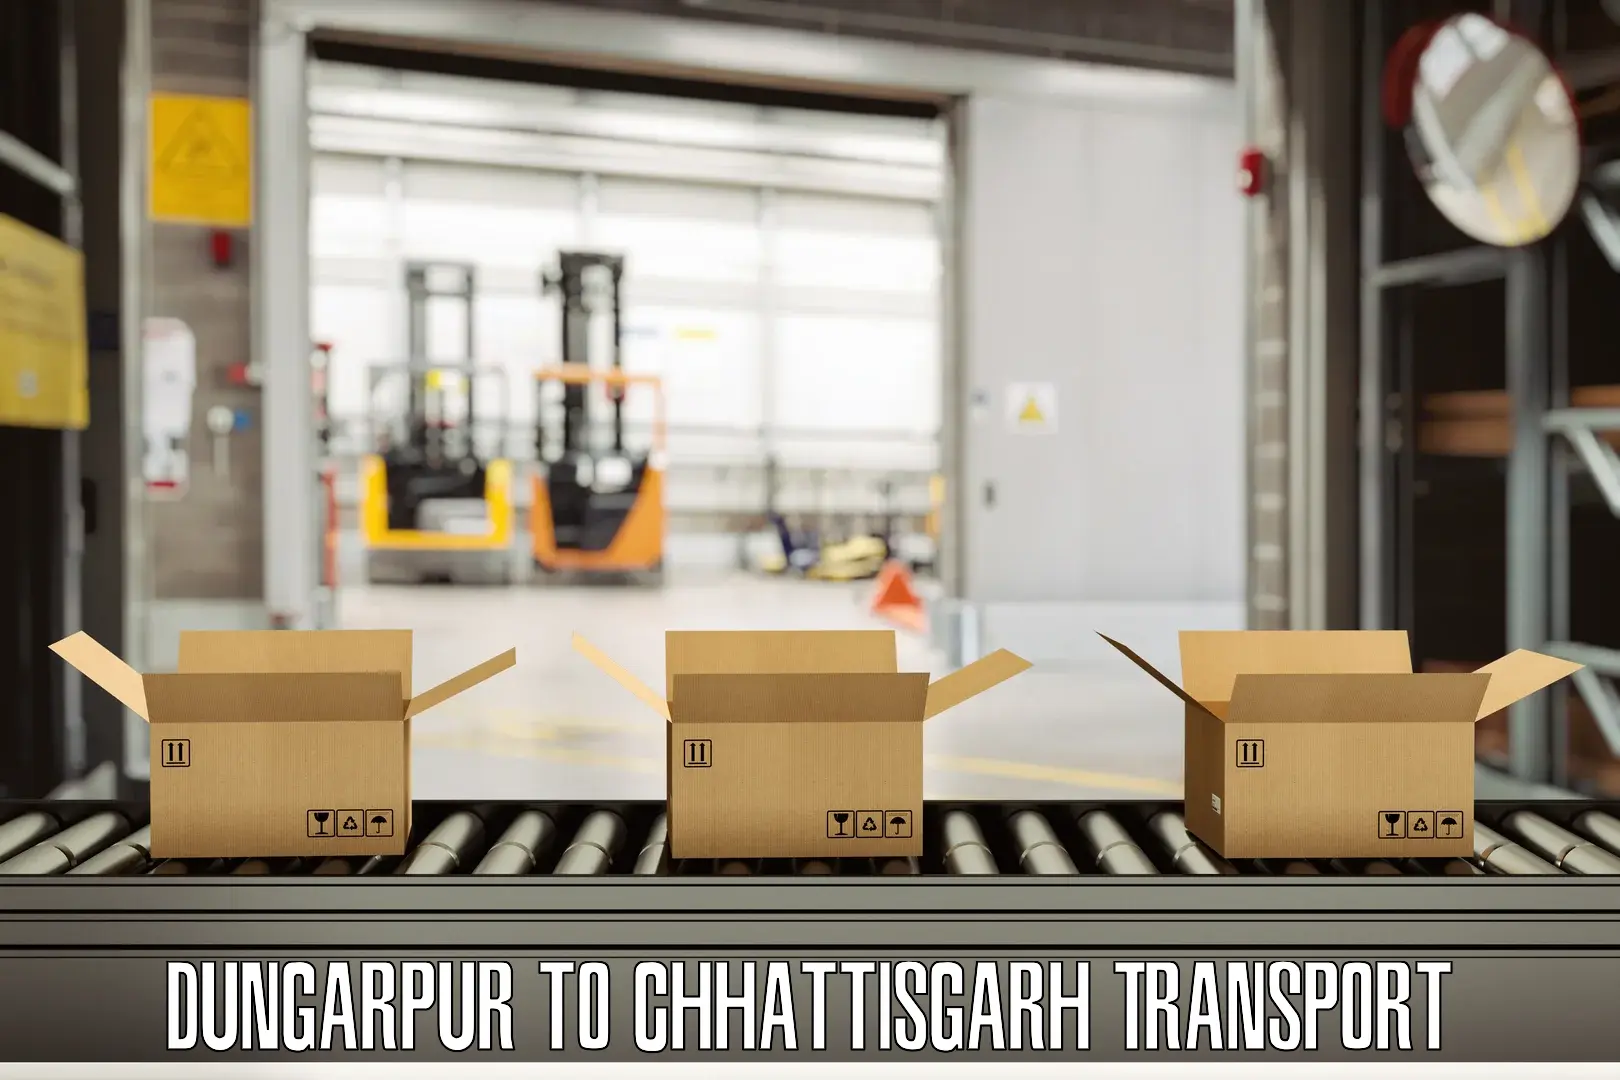 Container transport service Dungarpur to Chhattisgarh